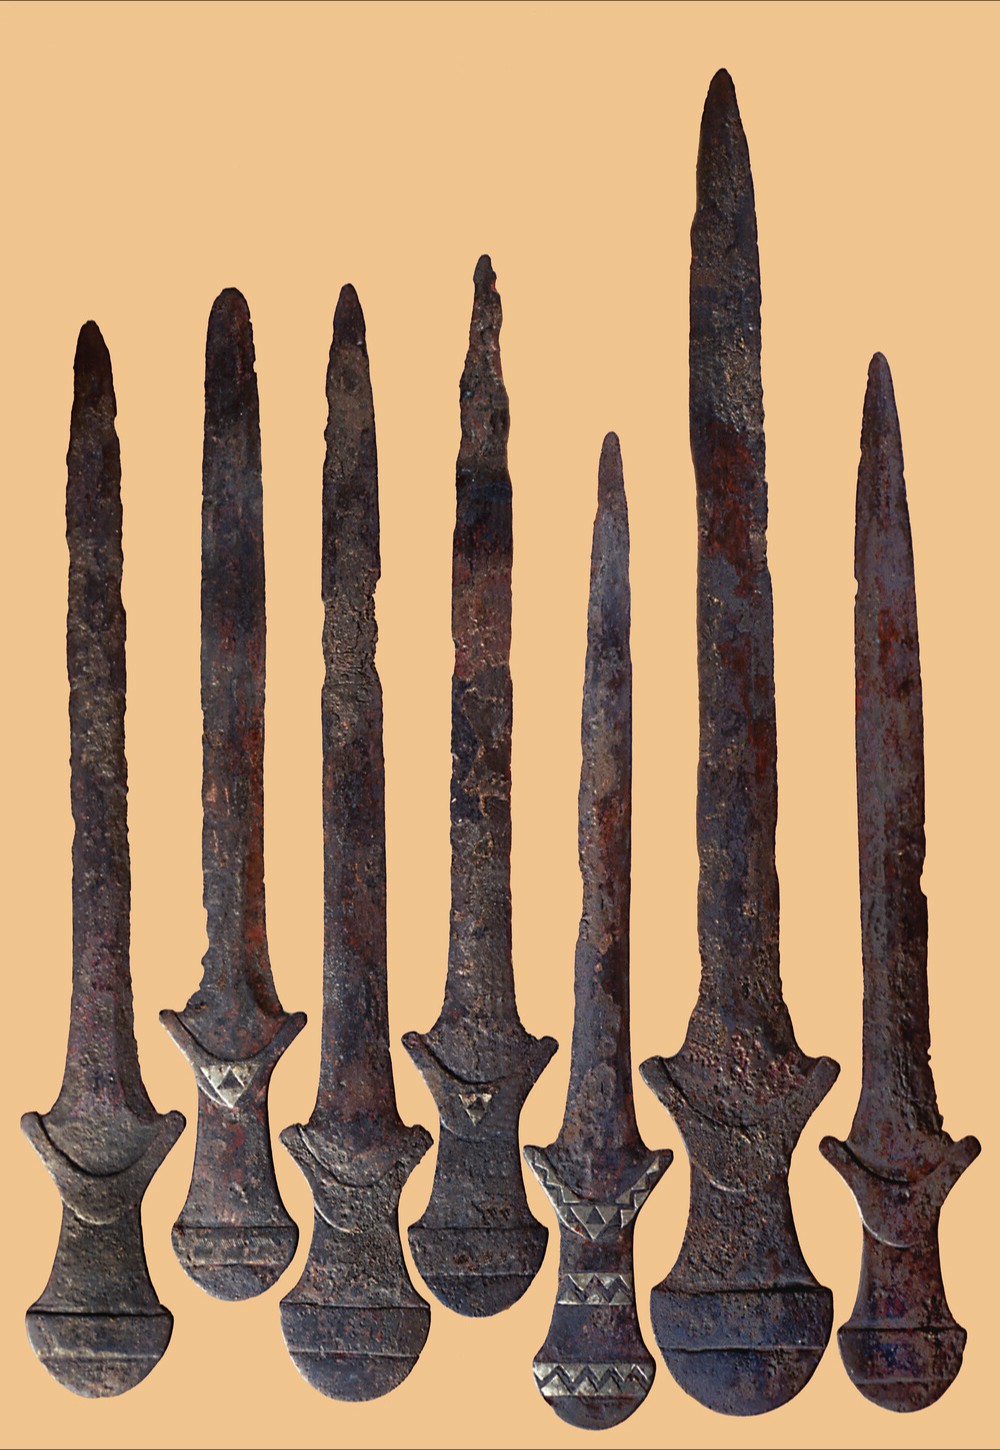 Epées manufacturées - bronze - de Tell d'Arslantepe - source & crédit : https://whc.unesco.org/fr/list/1622/gallery/